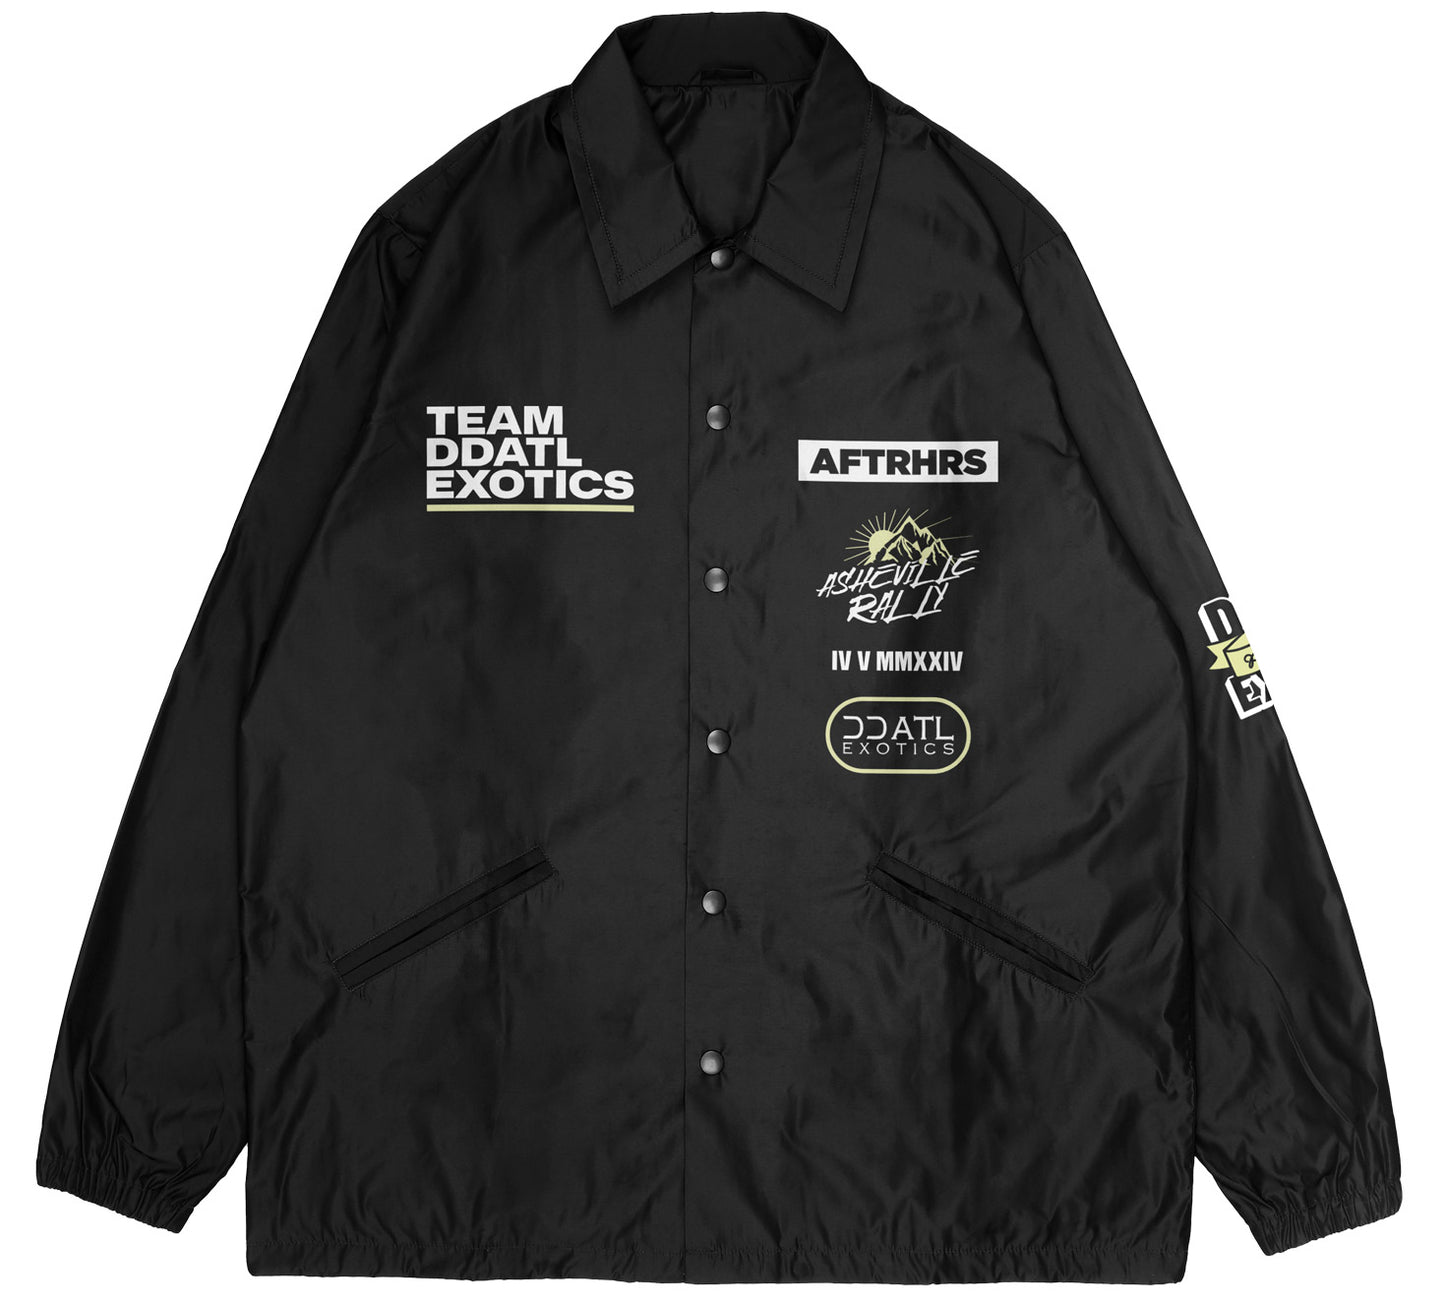 DDATL Exotics X AFTRHRS Coaches Jacket - Black